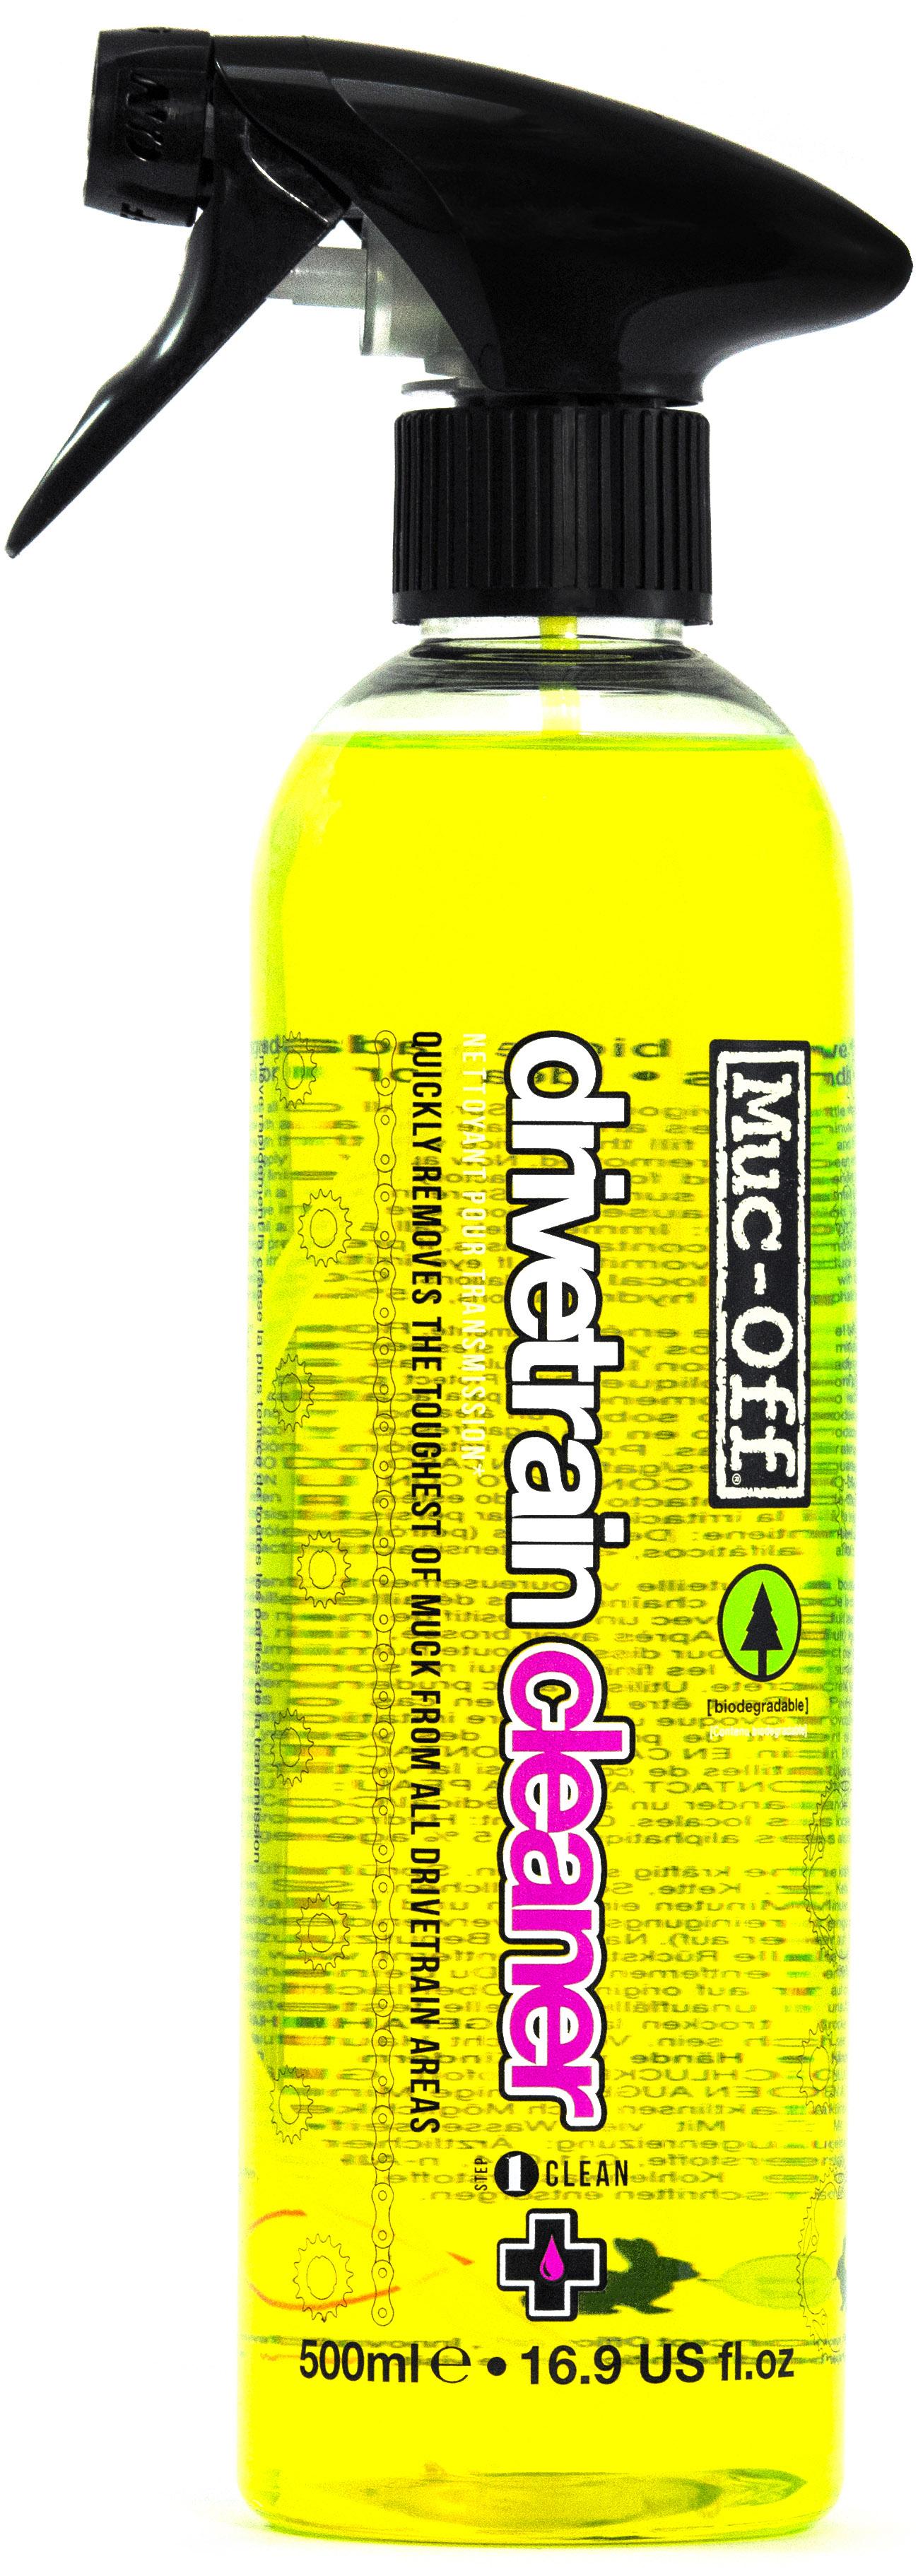 Muc-off Drivetrain Cleaner (500ml)  Yellow